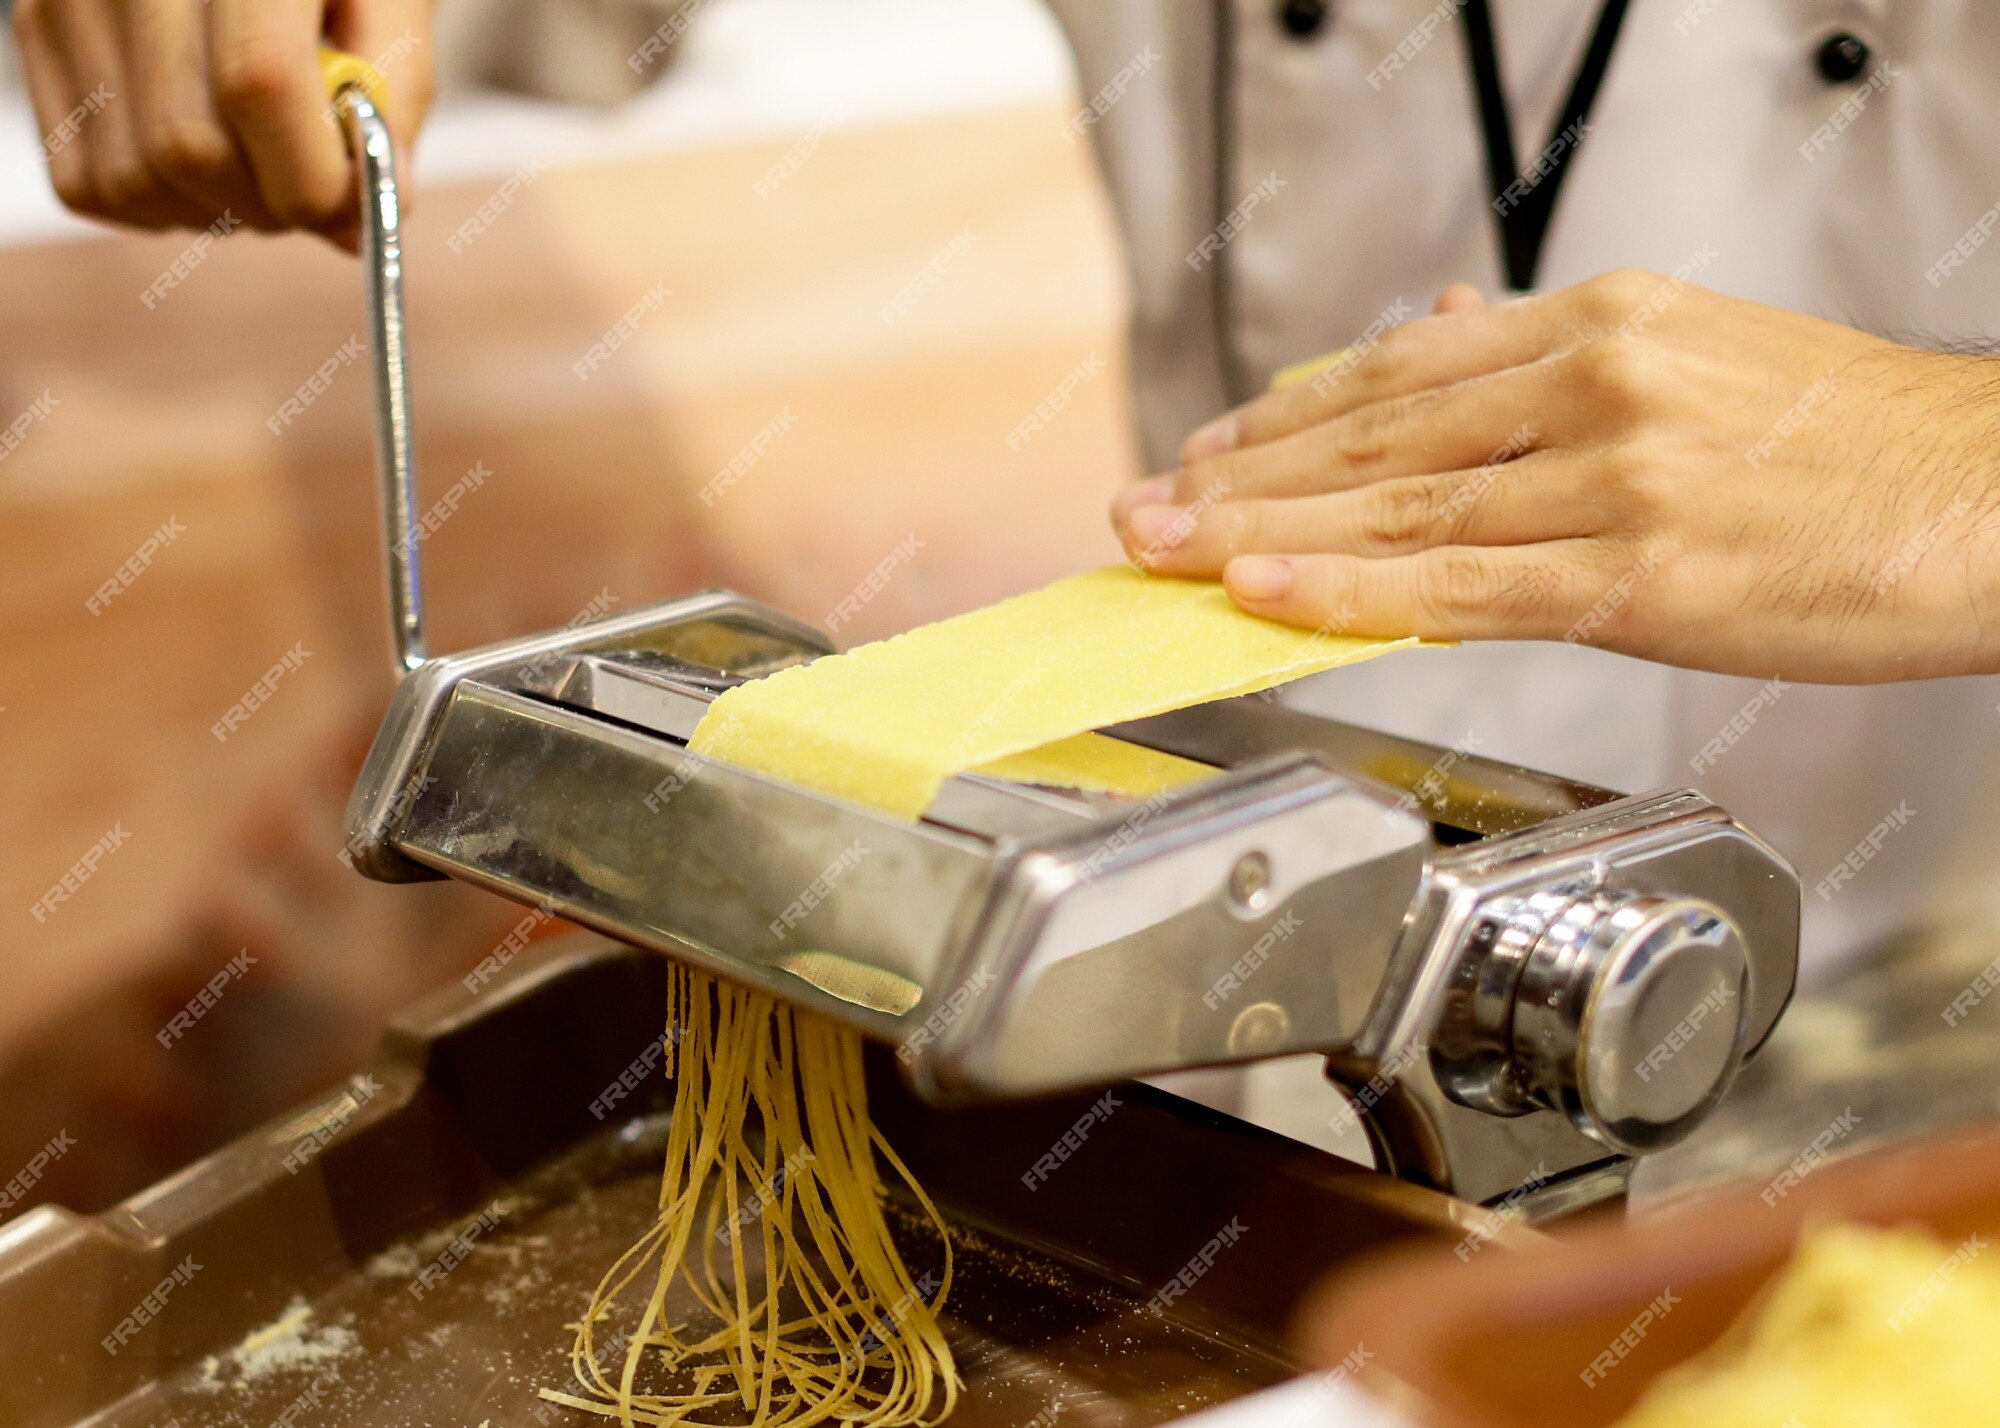 https://img.freepik.com/premium-photo/chef-making-pasta-with-machine-home-made-fresh-pasta_67394-335.jpg?w=2000